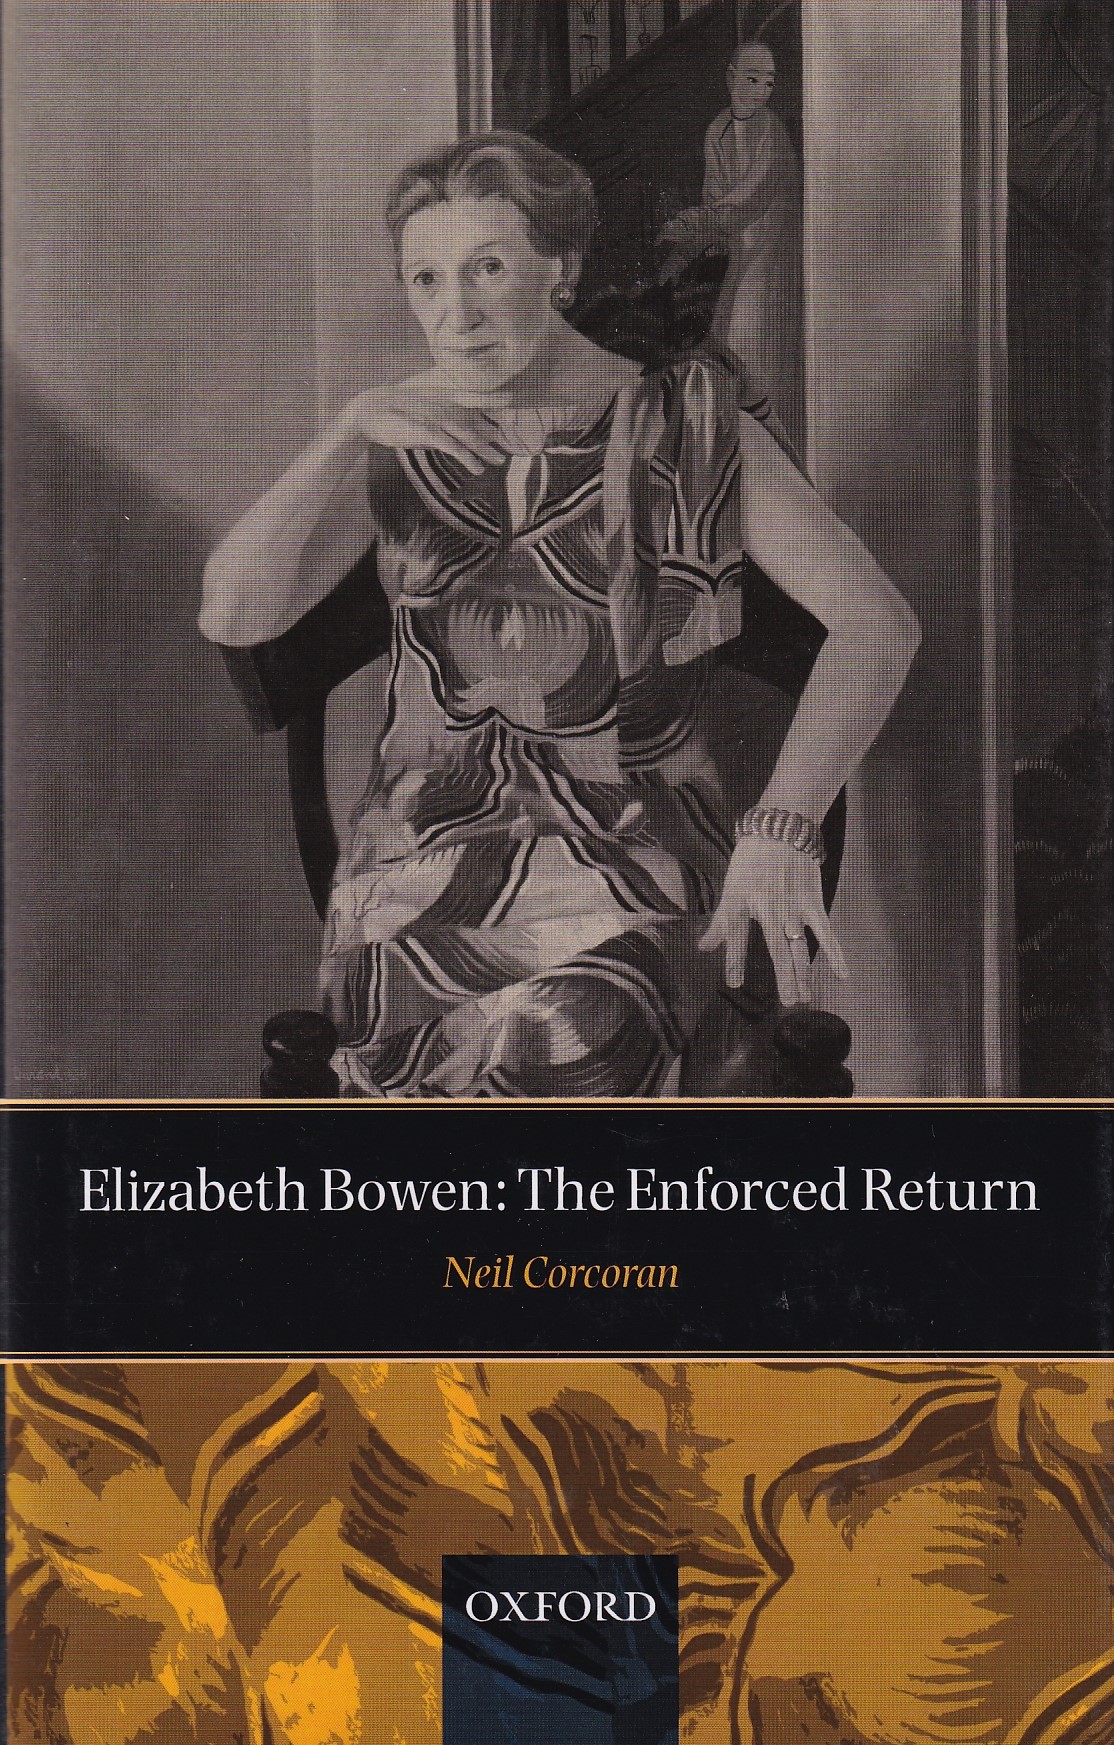 Elizabeth Bowen: The Enforced Return by Neil Corcoran